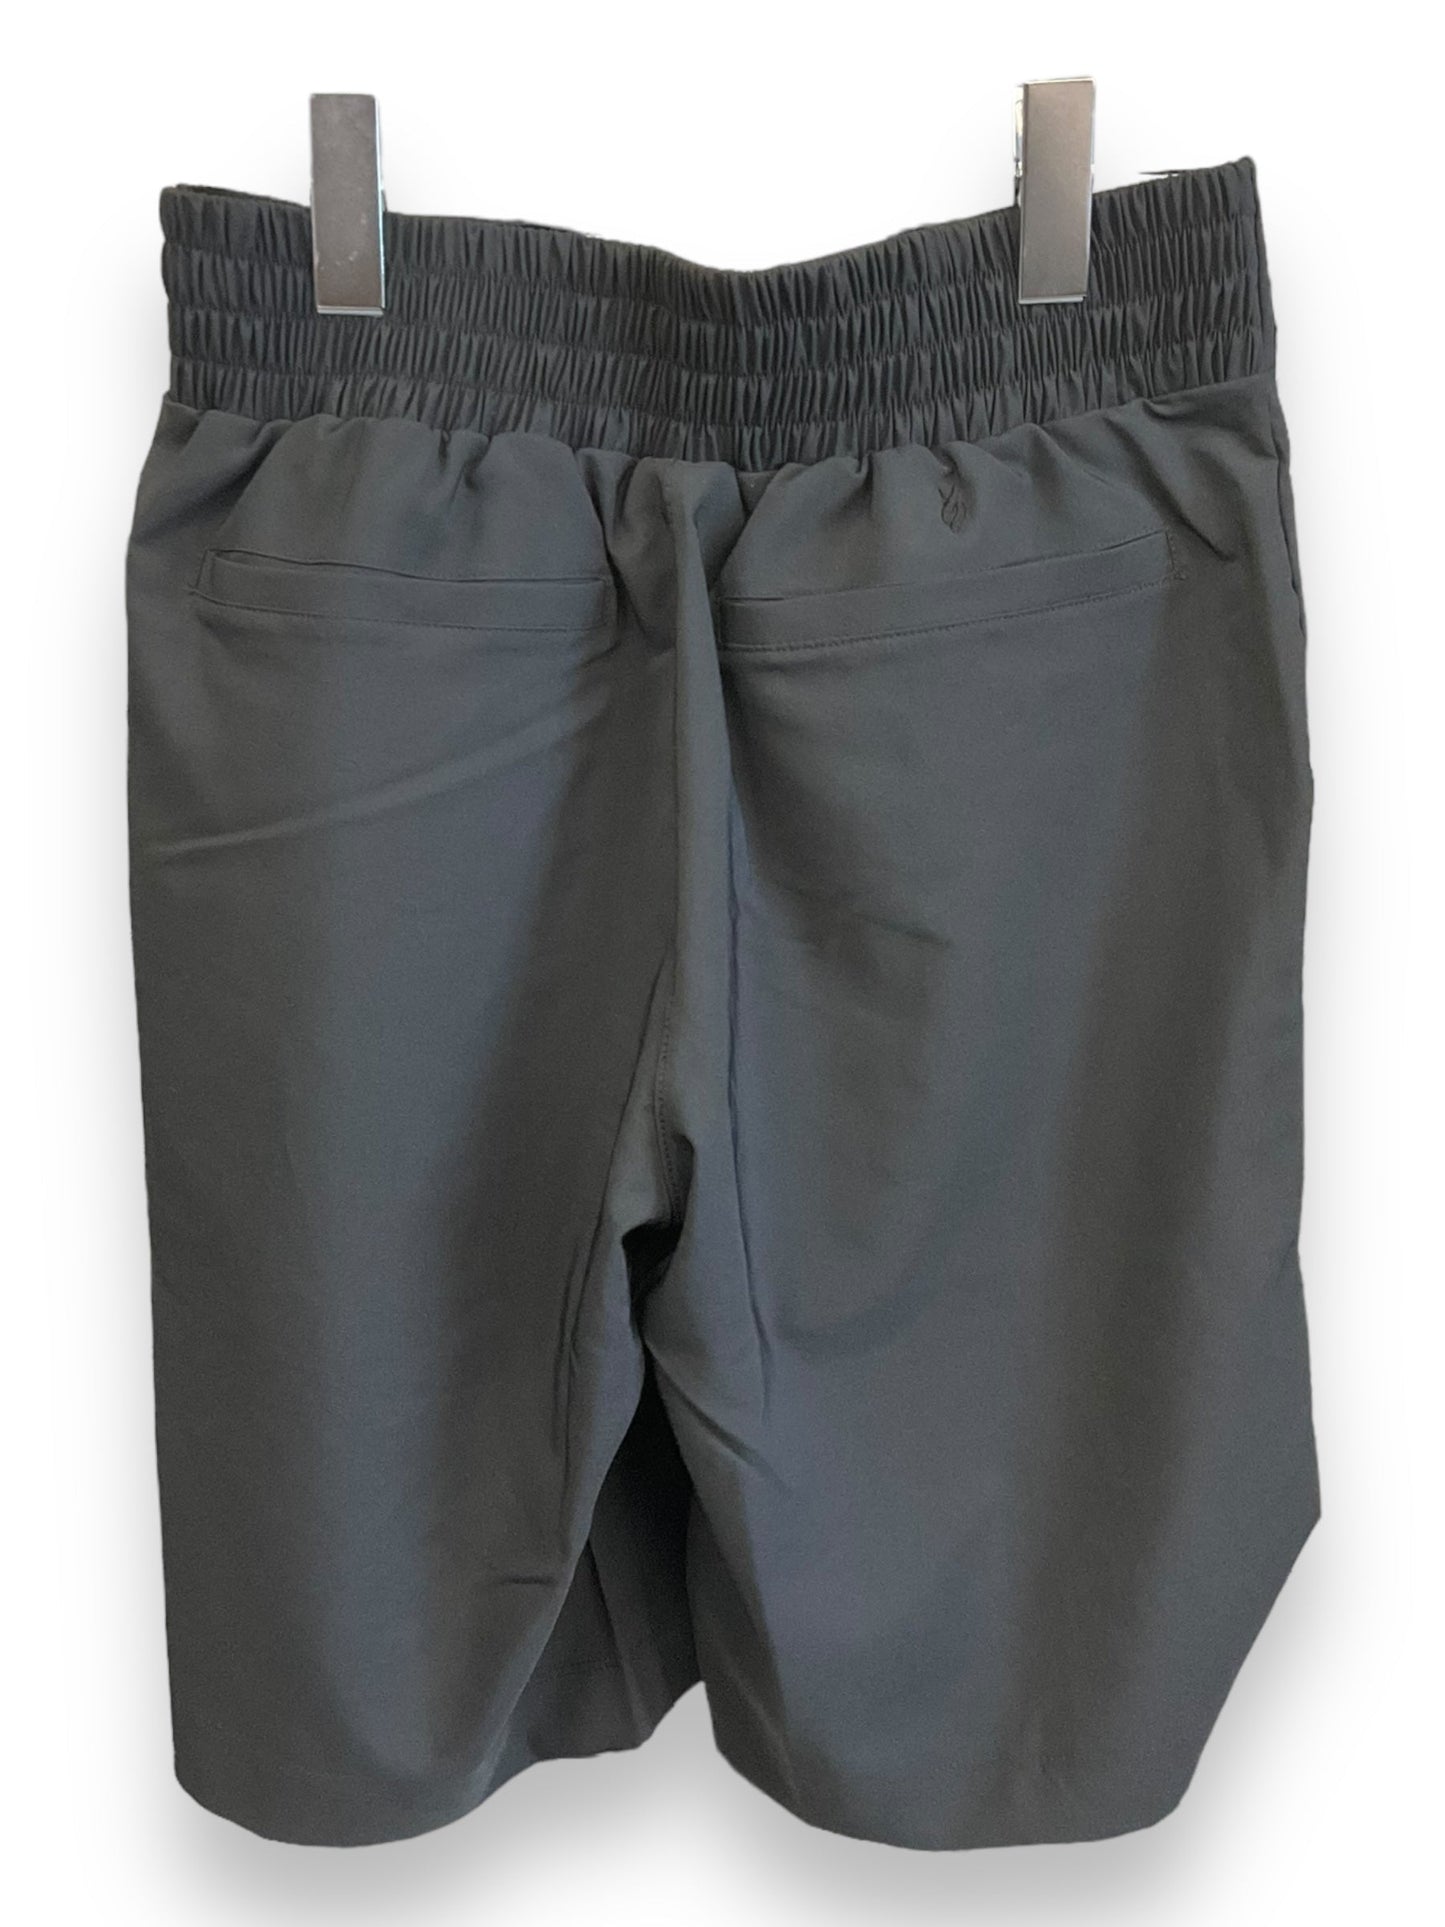 Shorts By Jennifer Lopez  Size: S